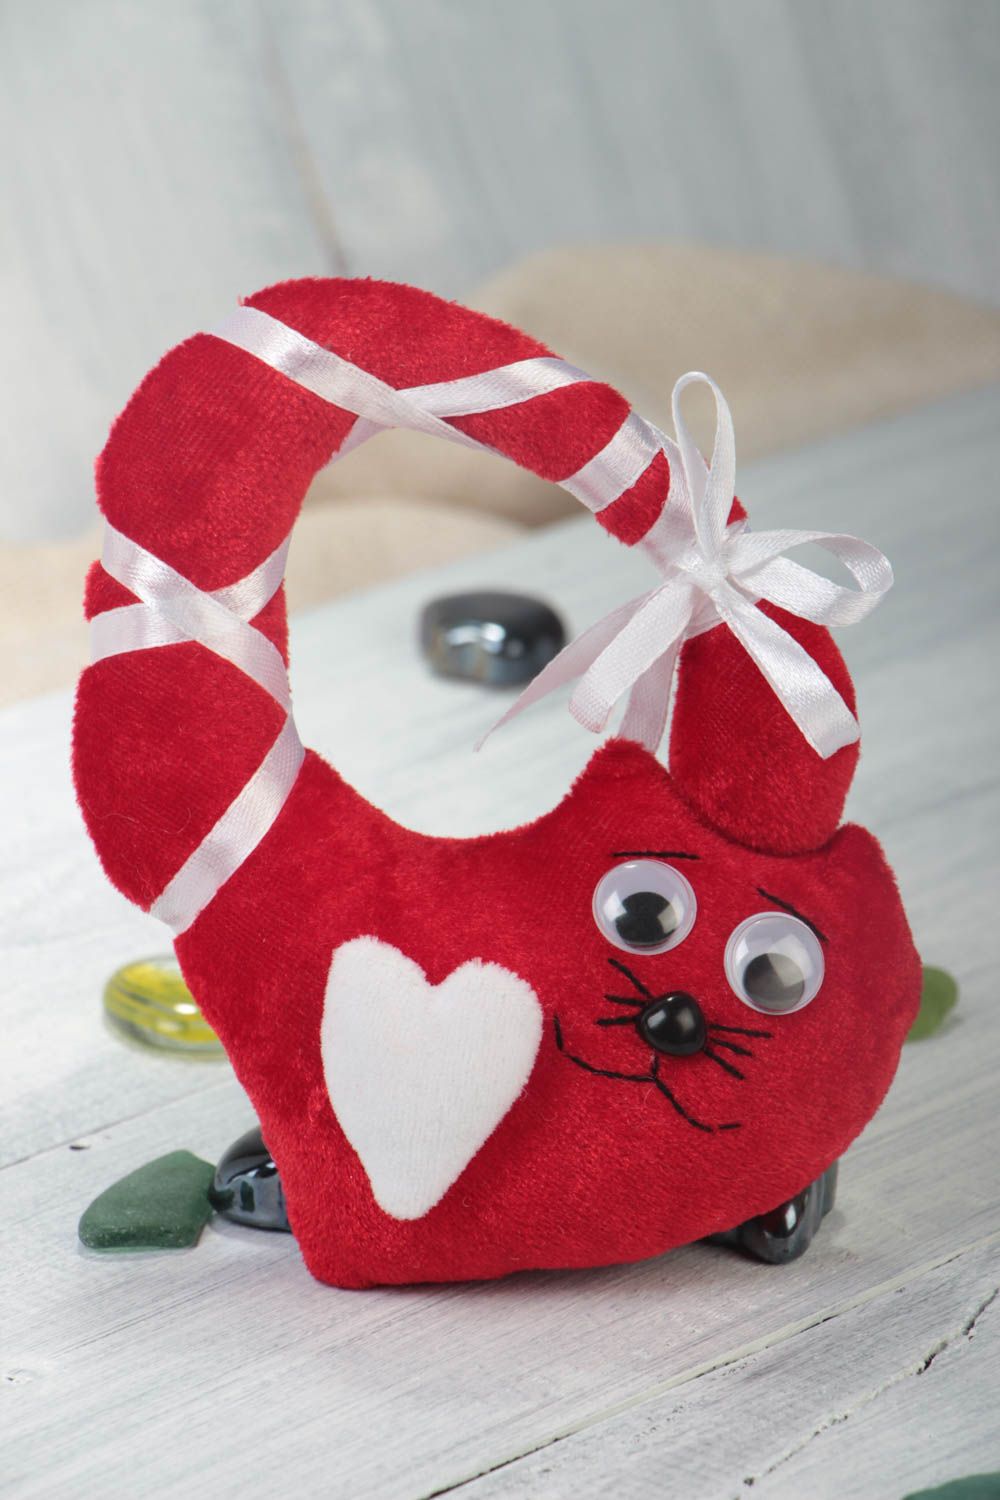 Handmade kleines Kuscheltier Katze Stofftier Geschenk Idee rot mit Atlasband foto 1